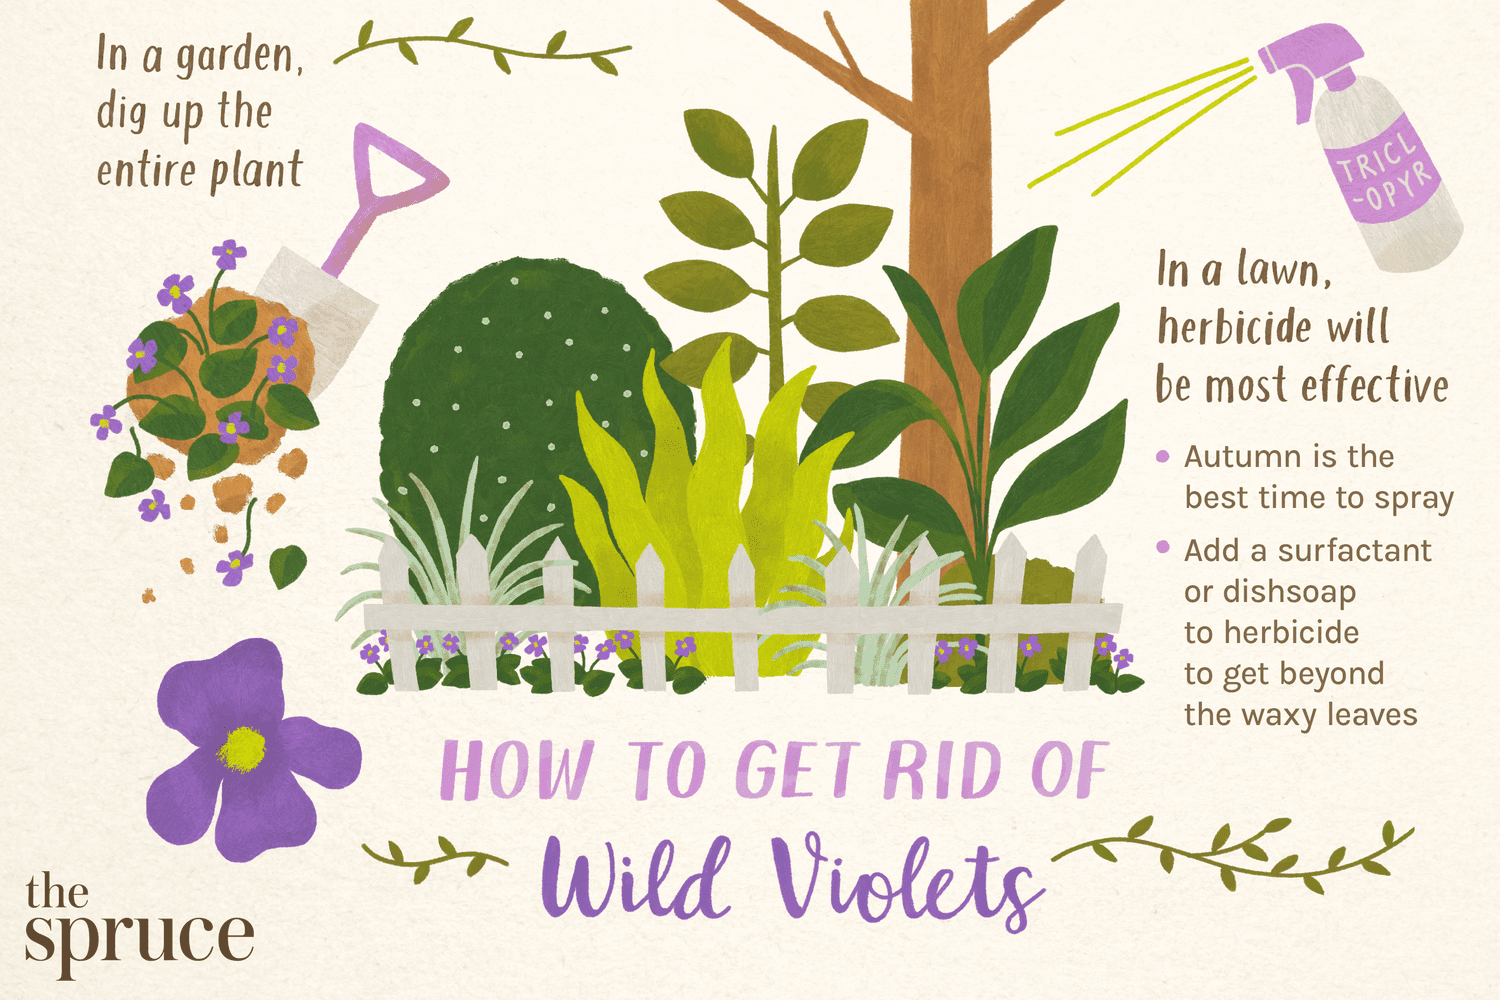 Ilustración que da consejos sobre cómo deshacerse de las violetas silvestres en el césped